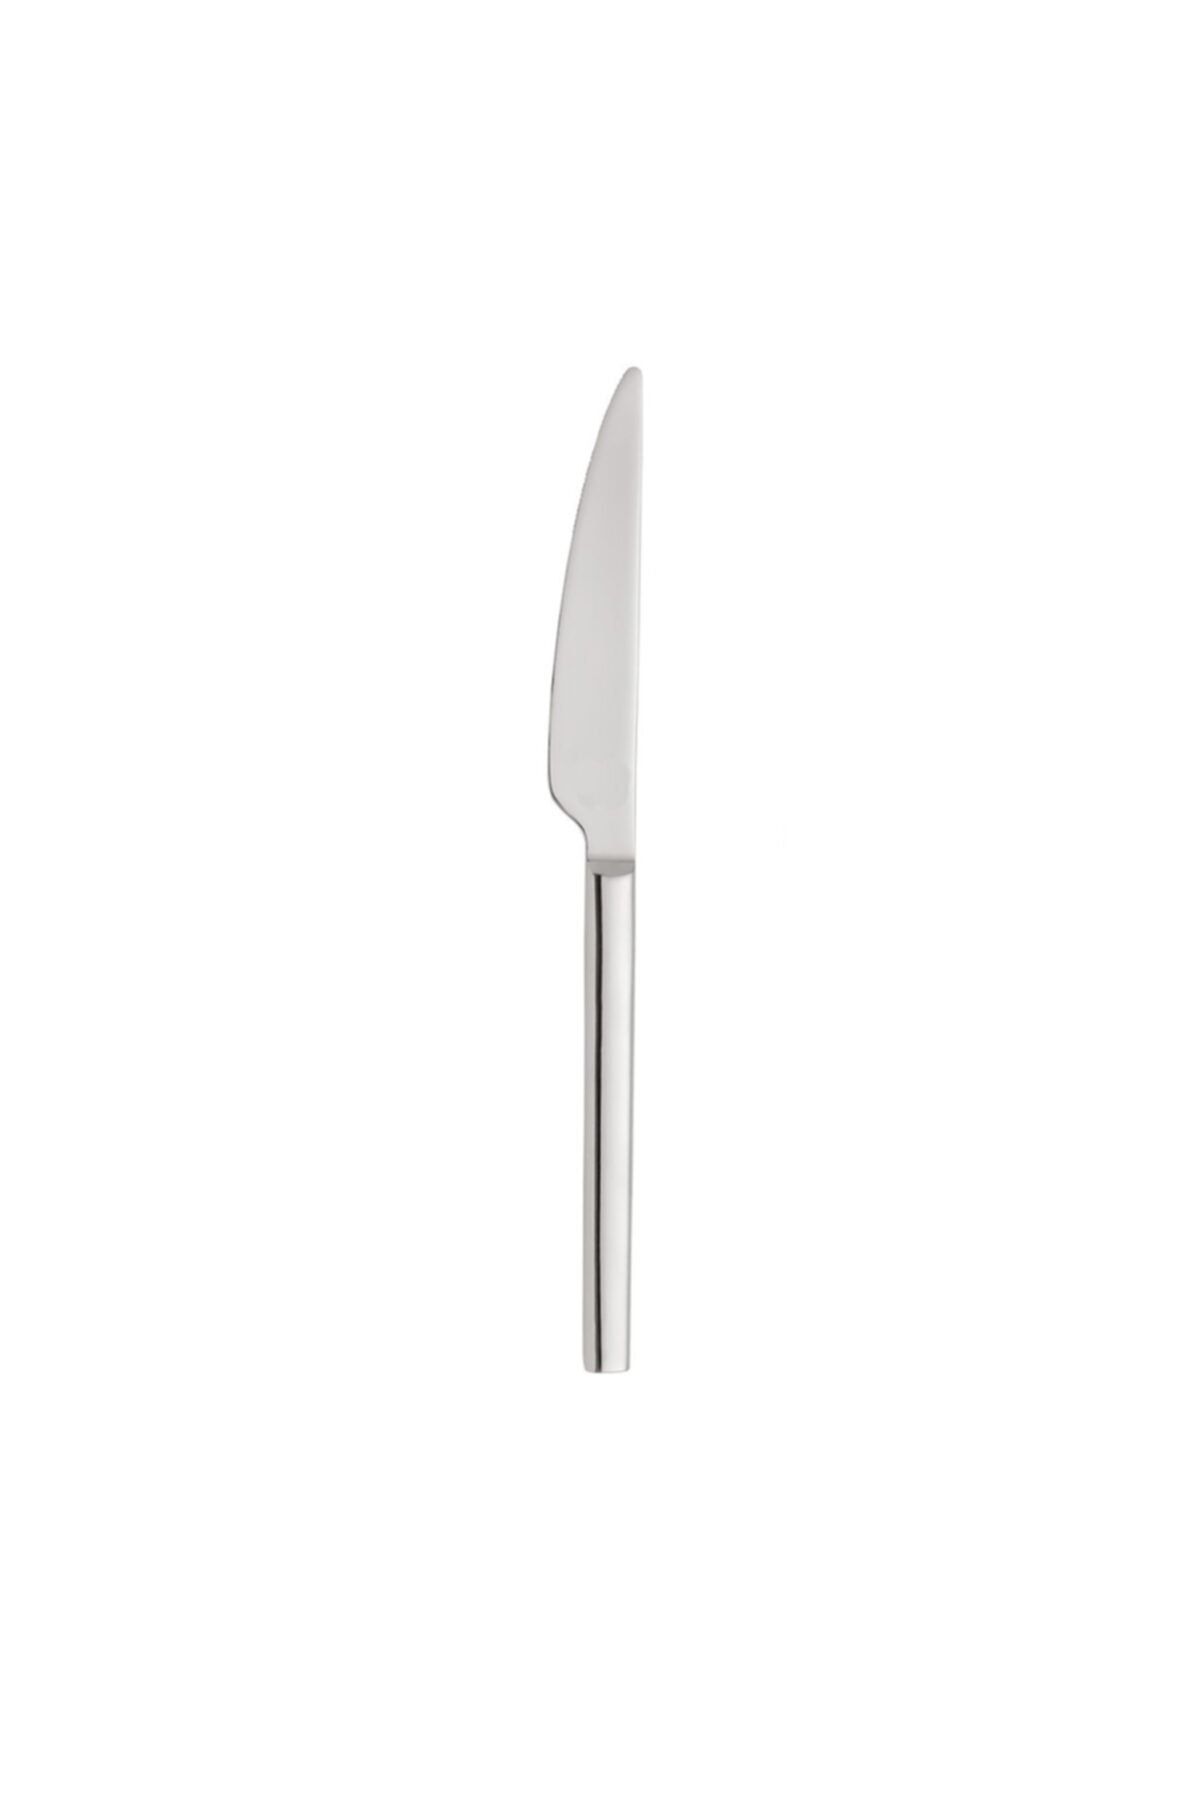 bimbambom Yemek Bıçağı 6'lı 18/10 Çelik, Lokanta Yemek Bıçağı